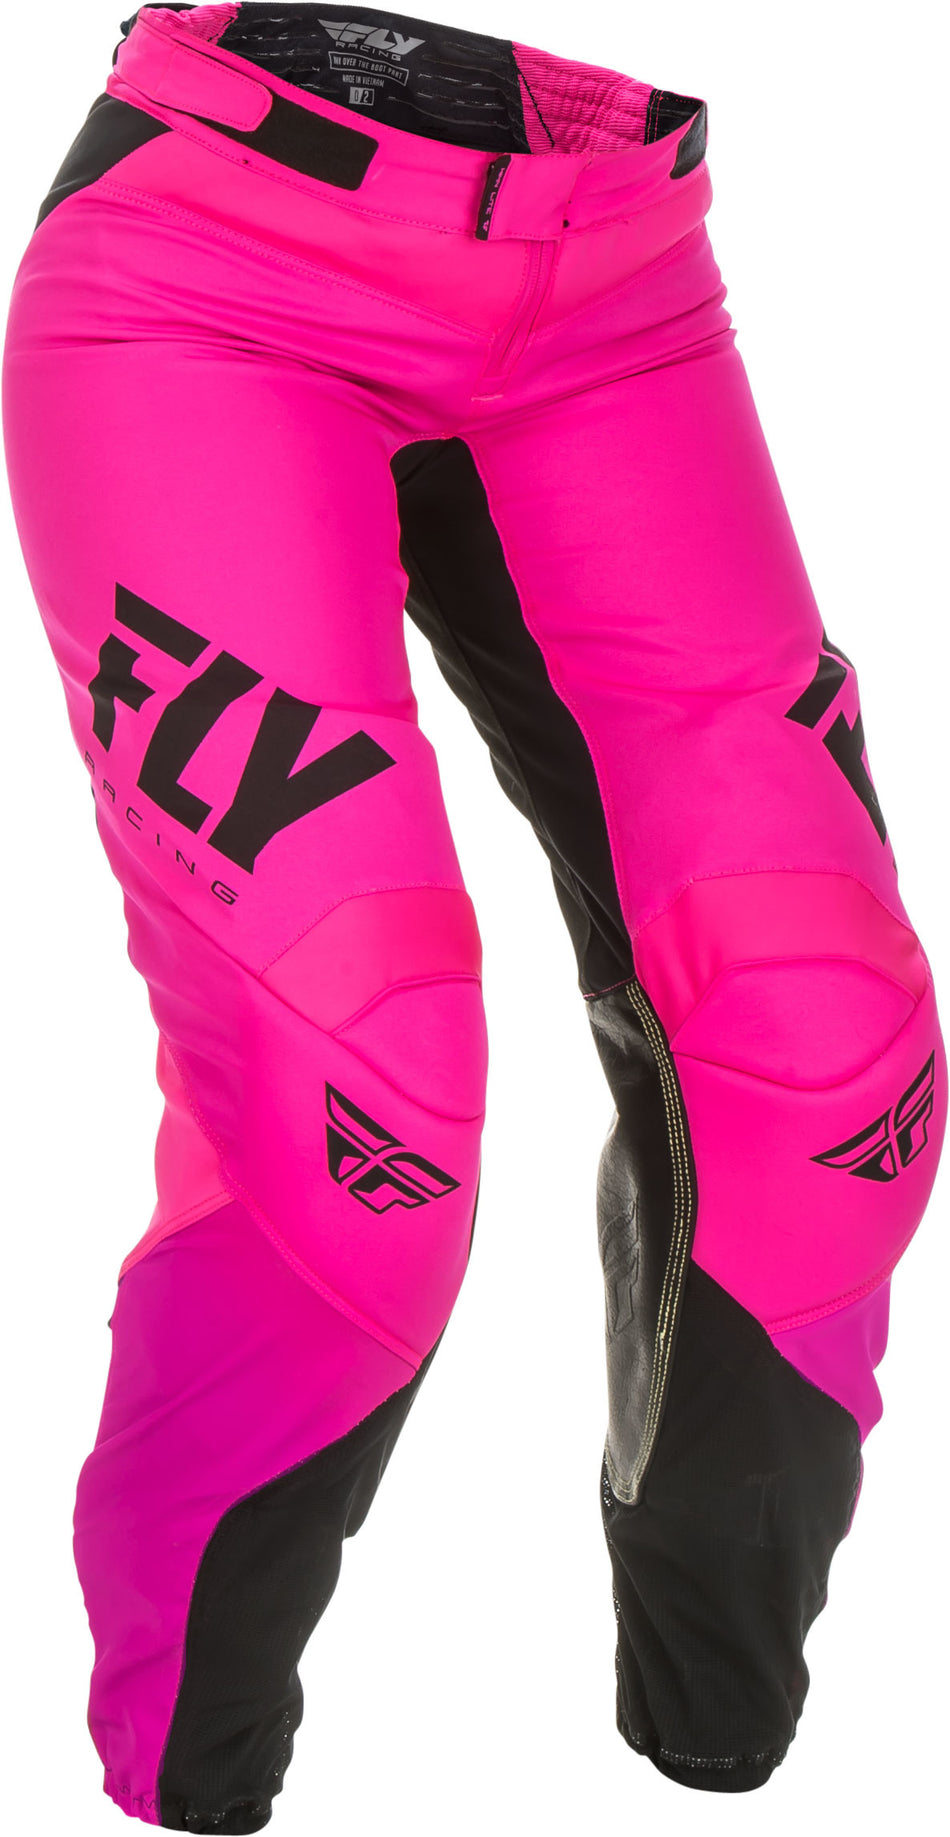 FLY RACING Women's Lite Race Pants Neon Pink/Black Sz 26 191361057922